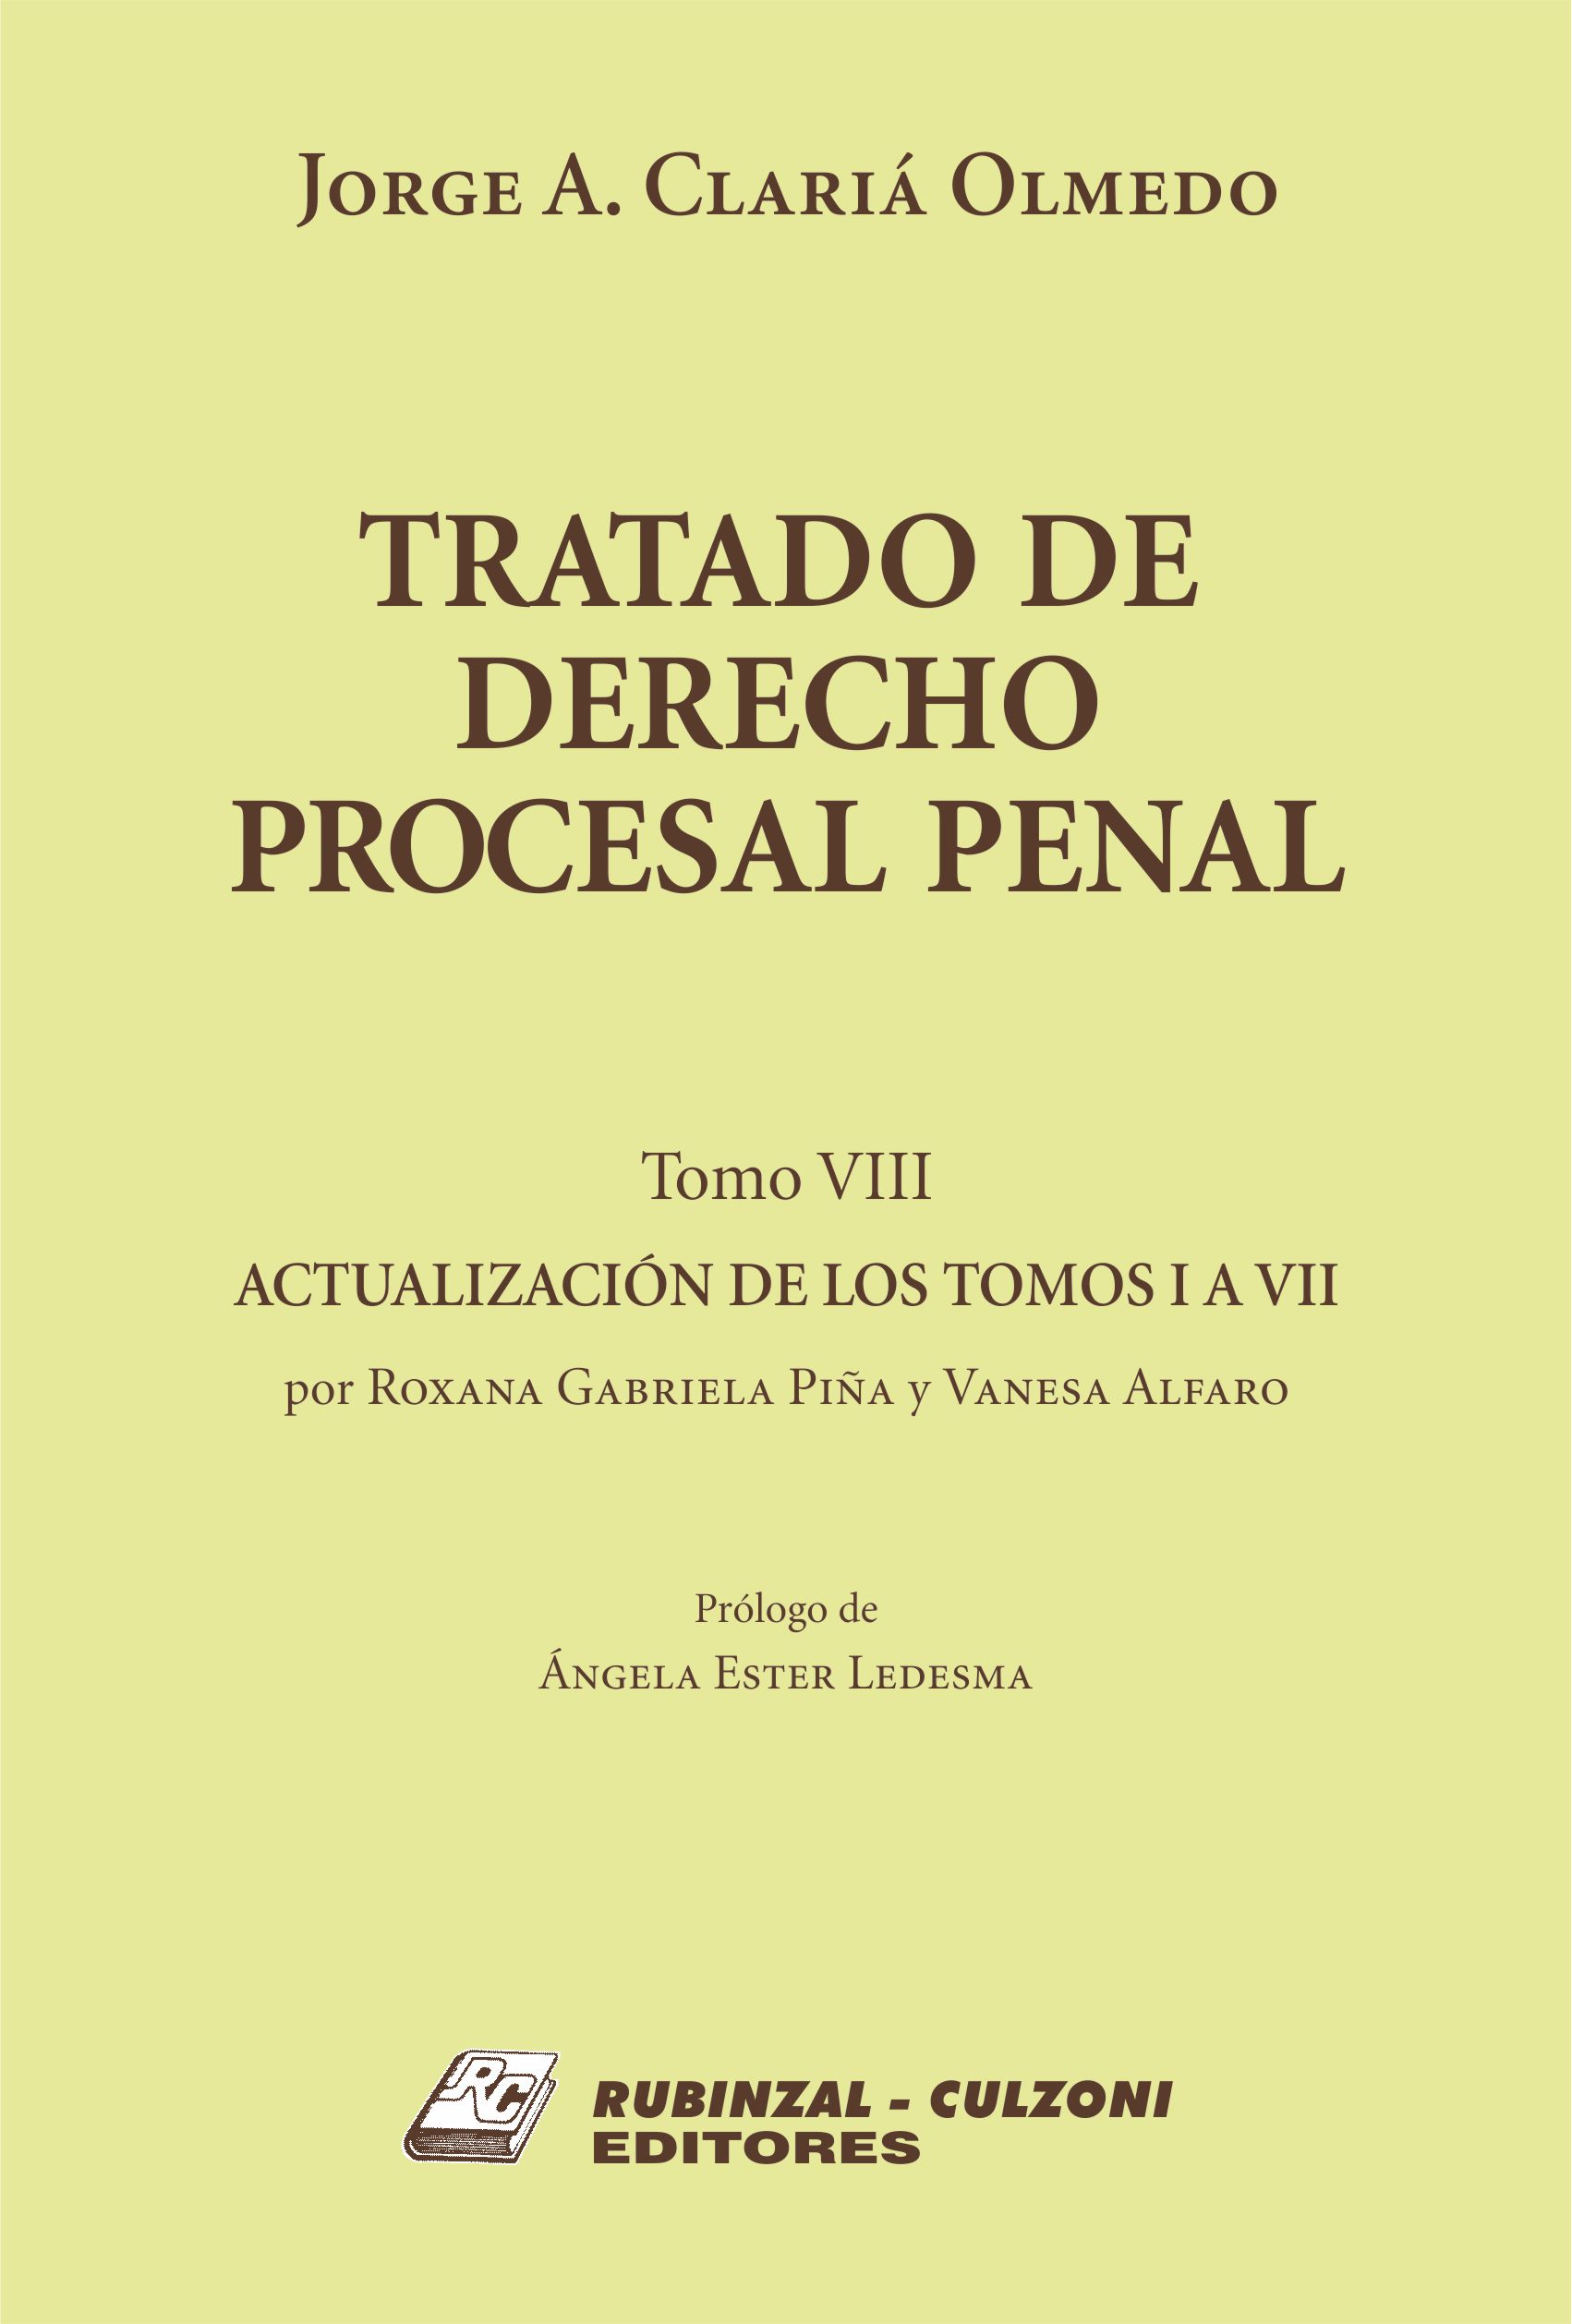 Tratado de Derecho Procesal Penal. - Tomo VIII. Actualización de los tomos I a VII, por Roxana Gabriela Piña y Vanesa Alfaro.